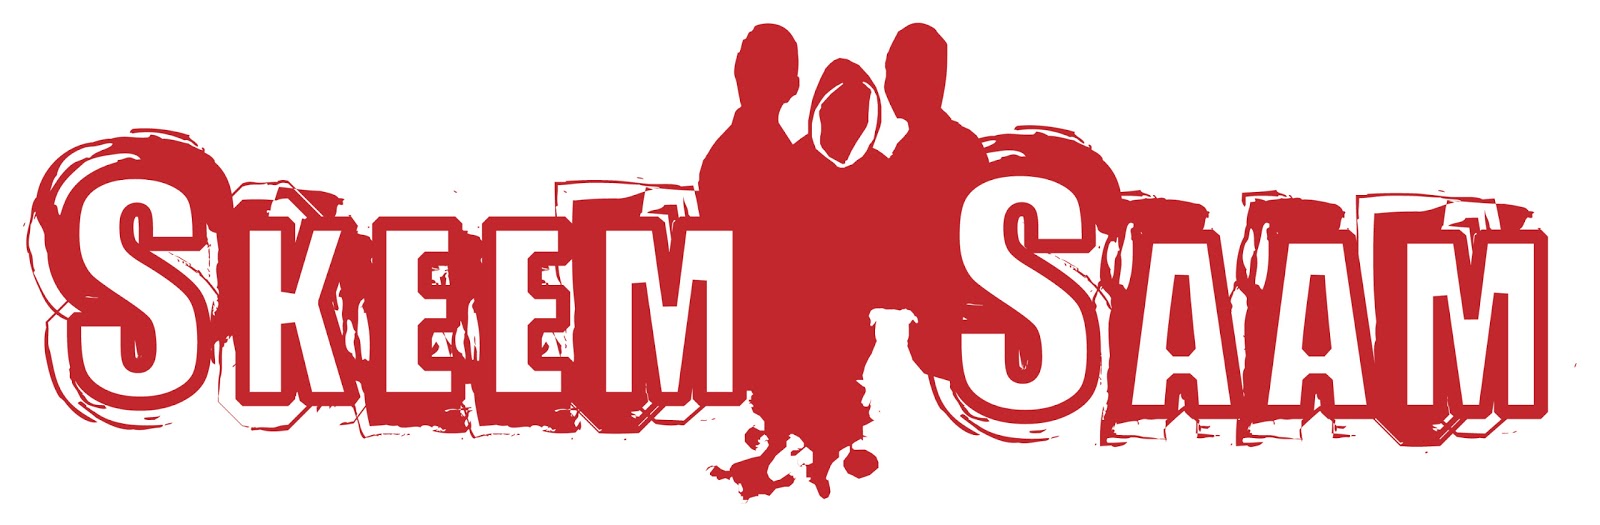 SABC Education: Skeem Saam Season 2 episode teasers